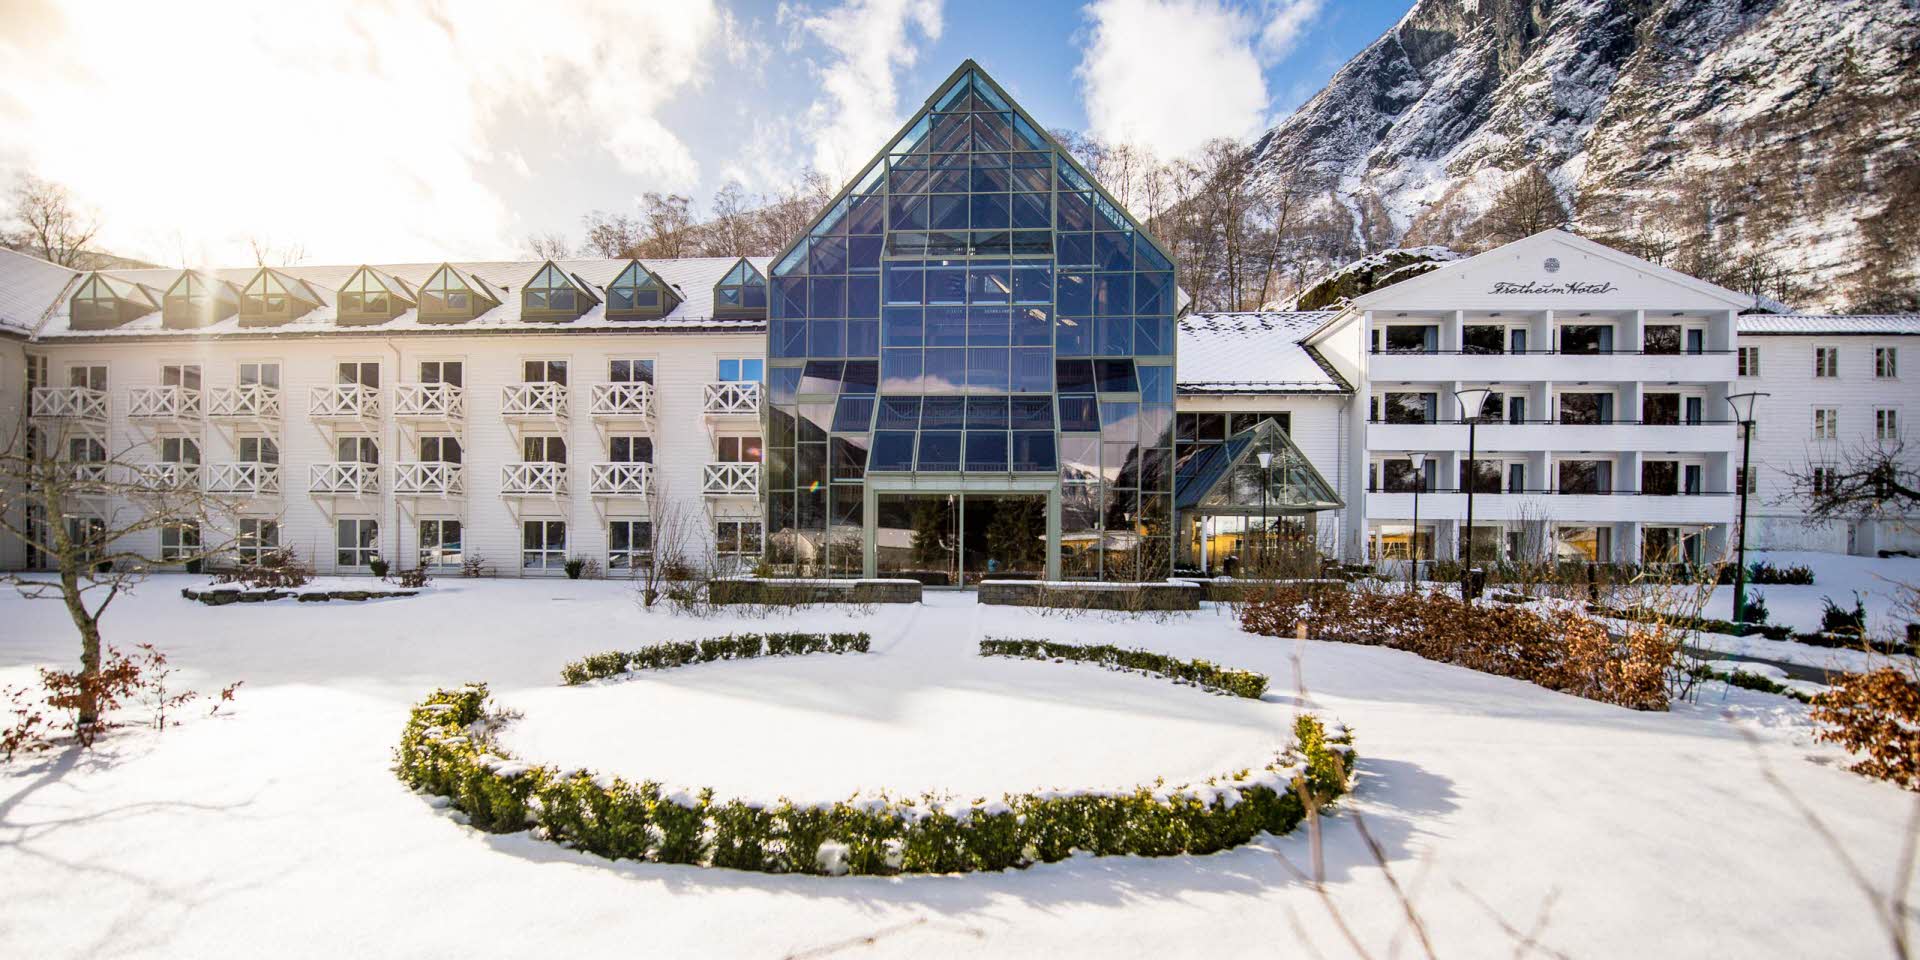 Hotel Fretheim y jardín en invierno